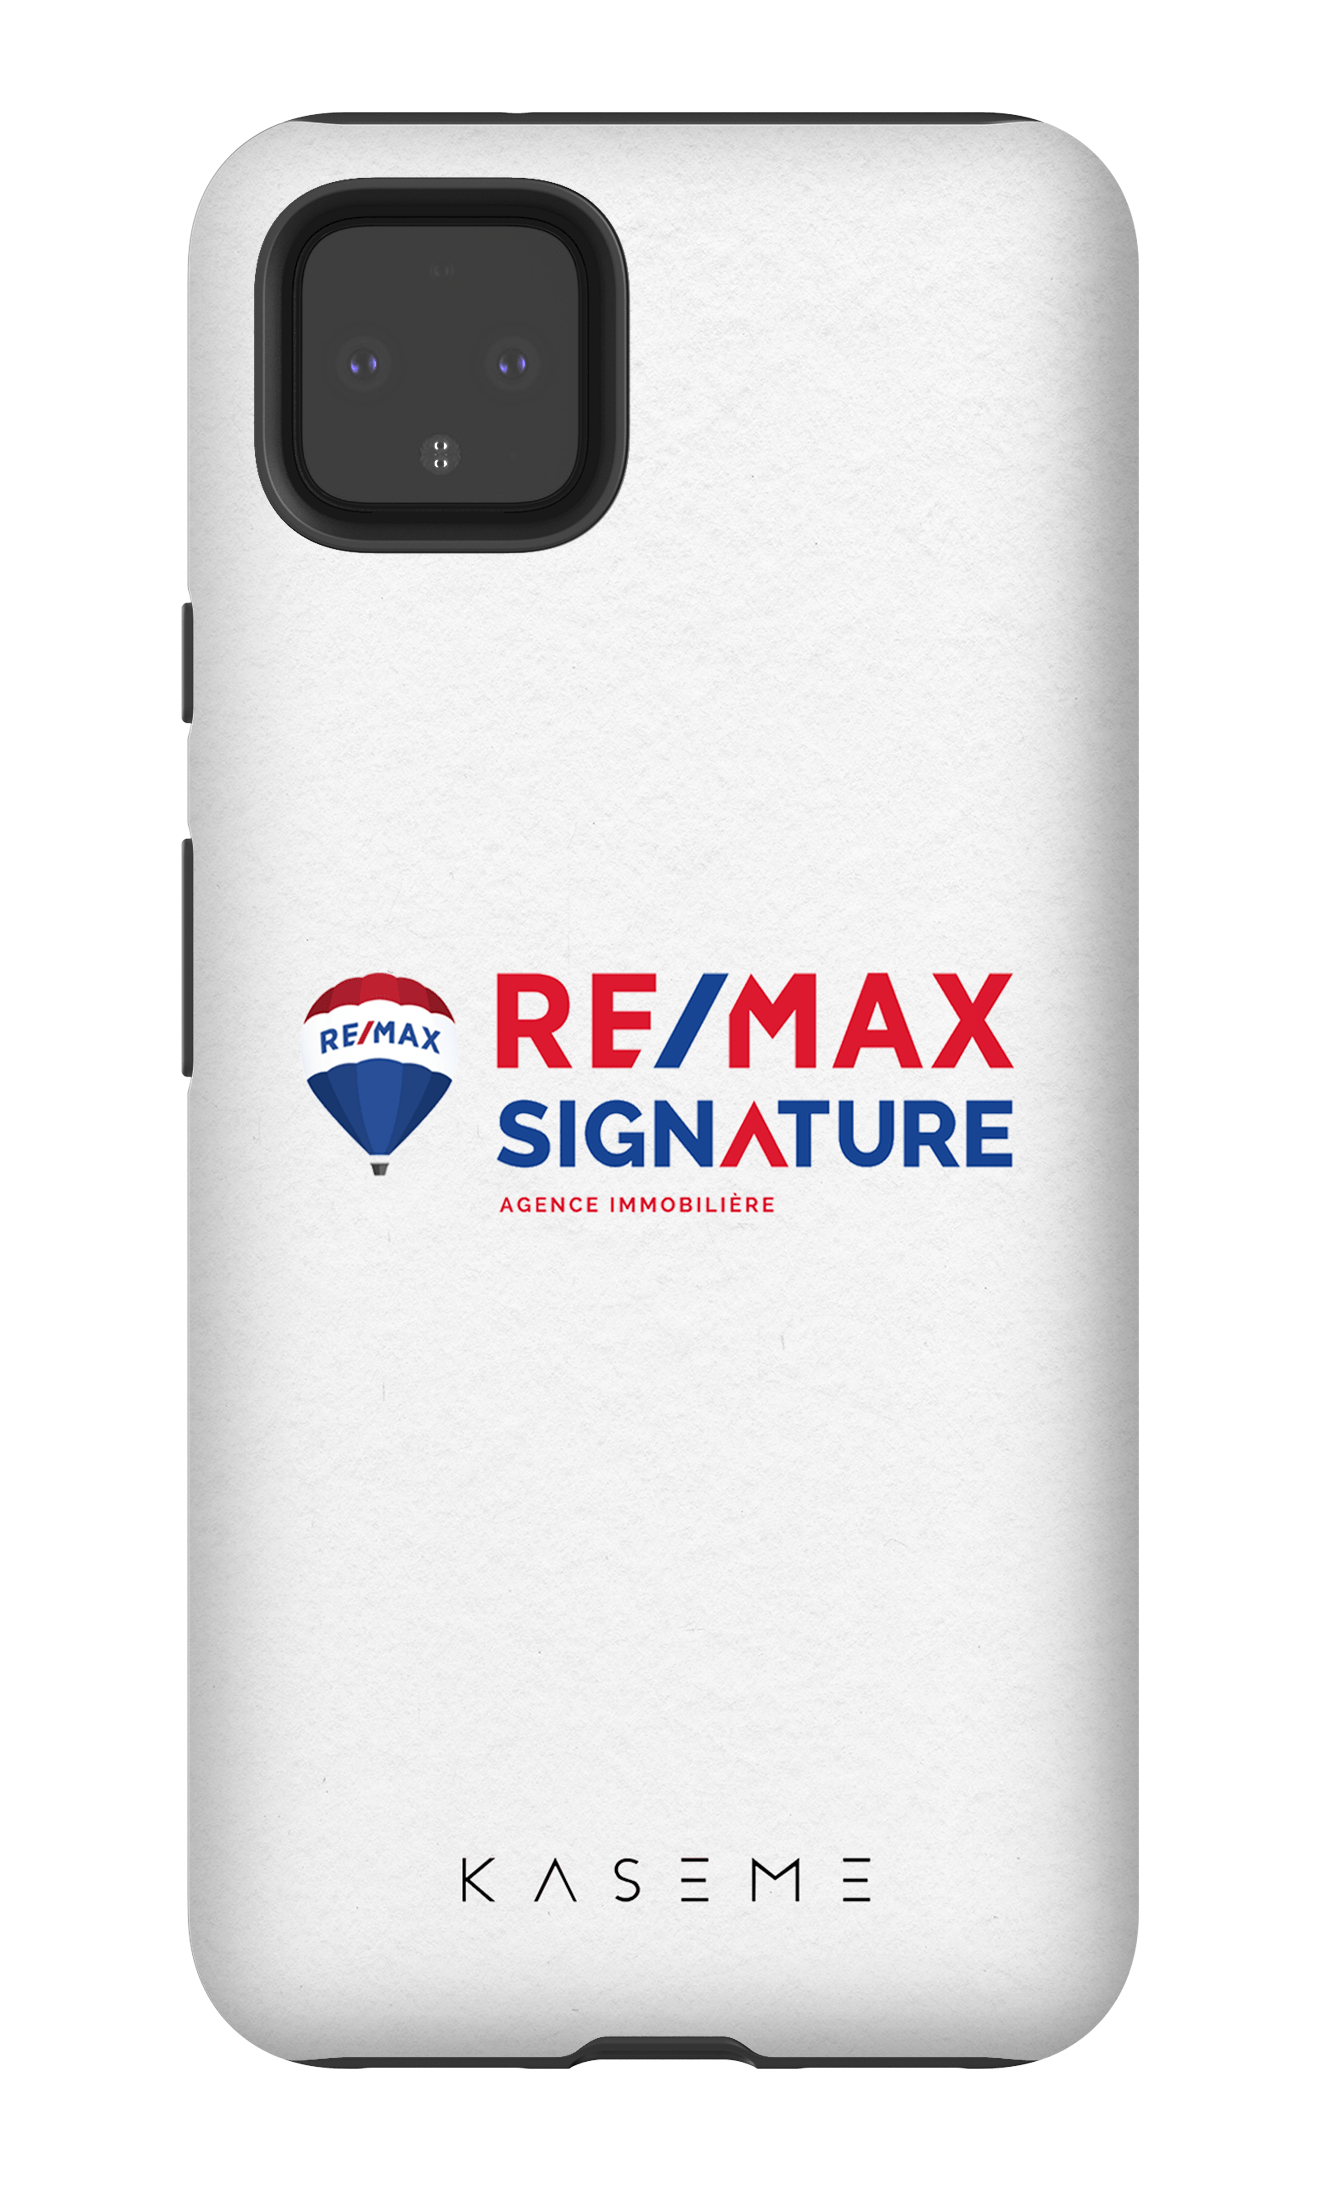 Remax Signature Blanc - Google Pixel 4 XL